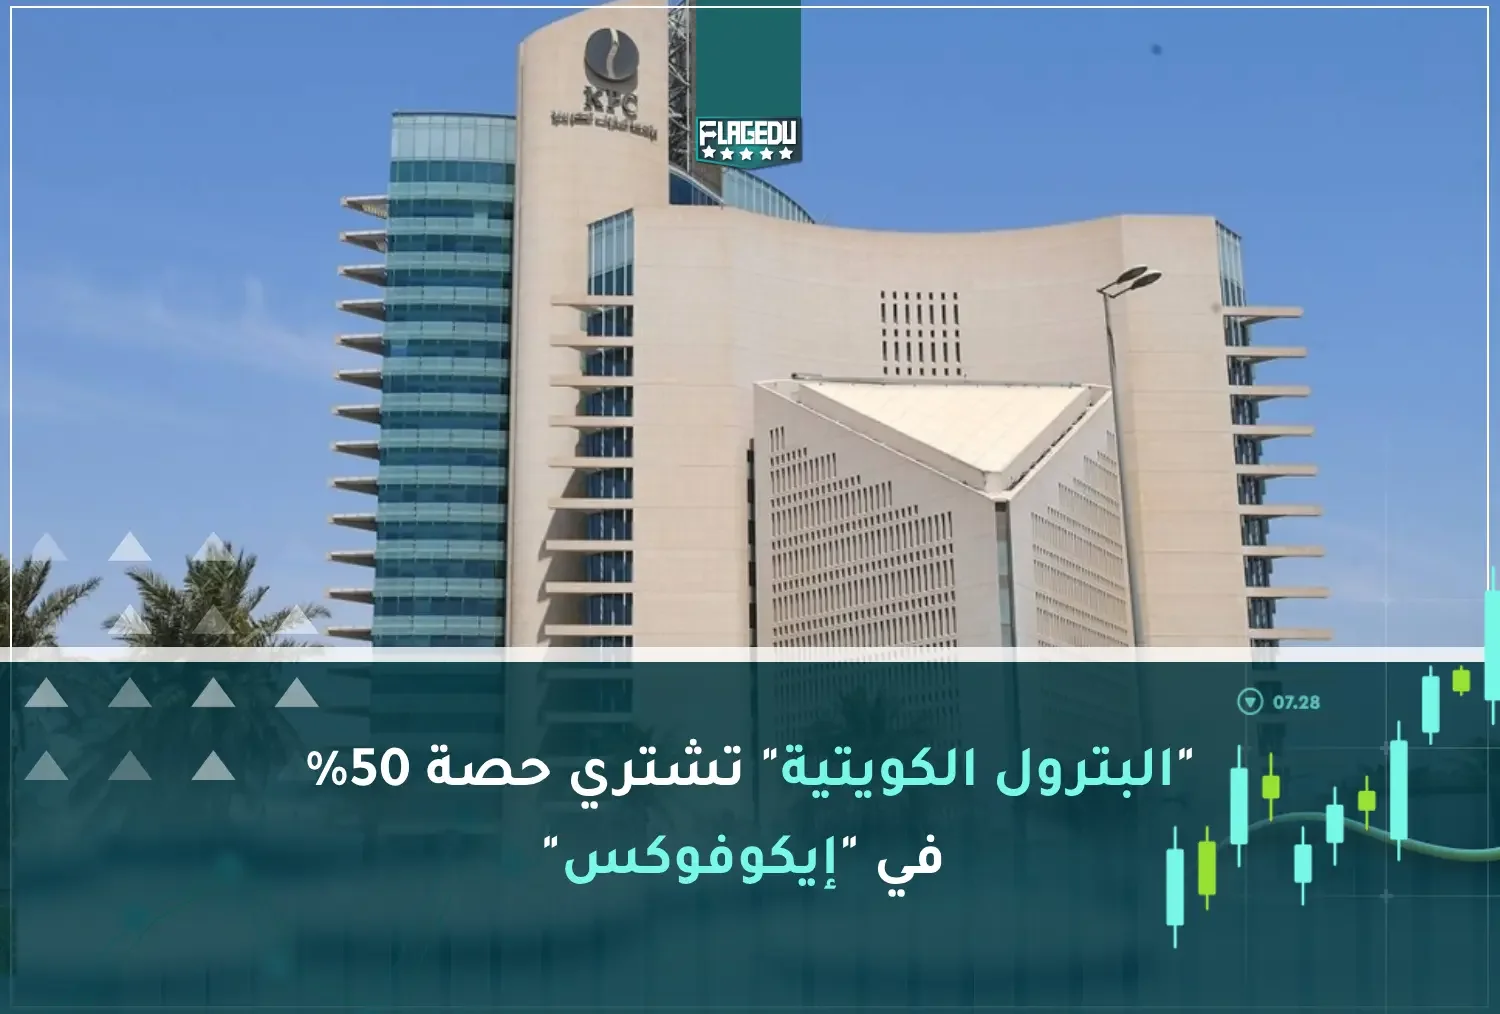 البترول الكويتية  تشتري حصة 50%  في  إيكوفوكس